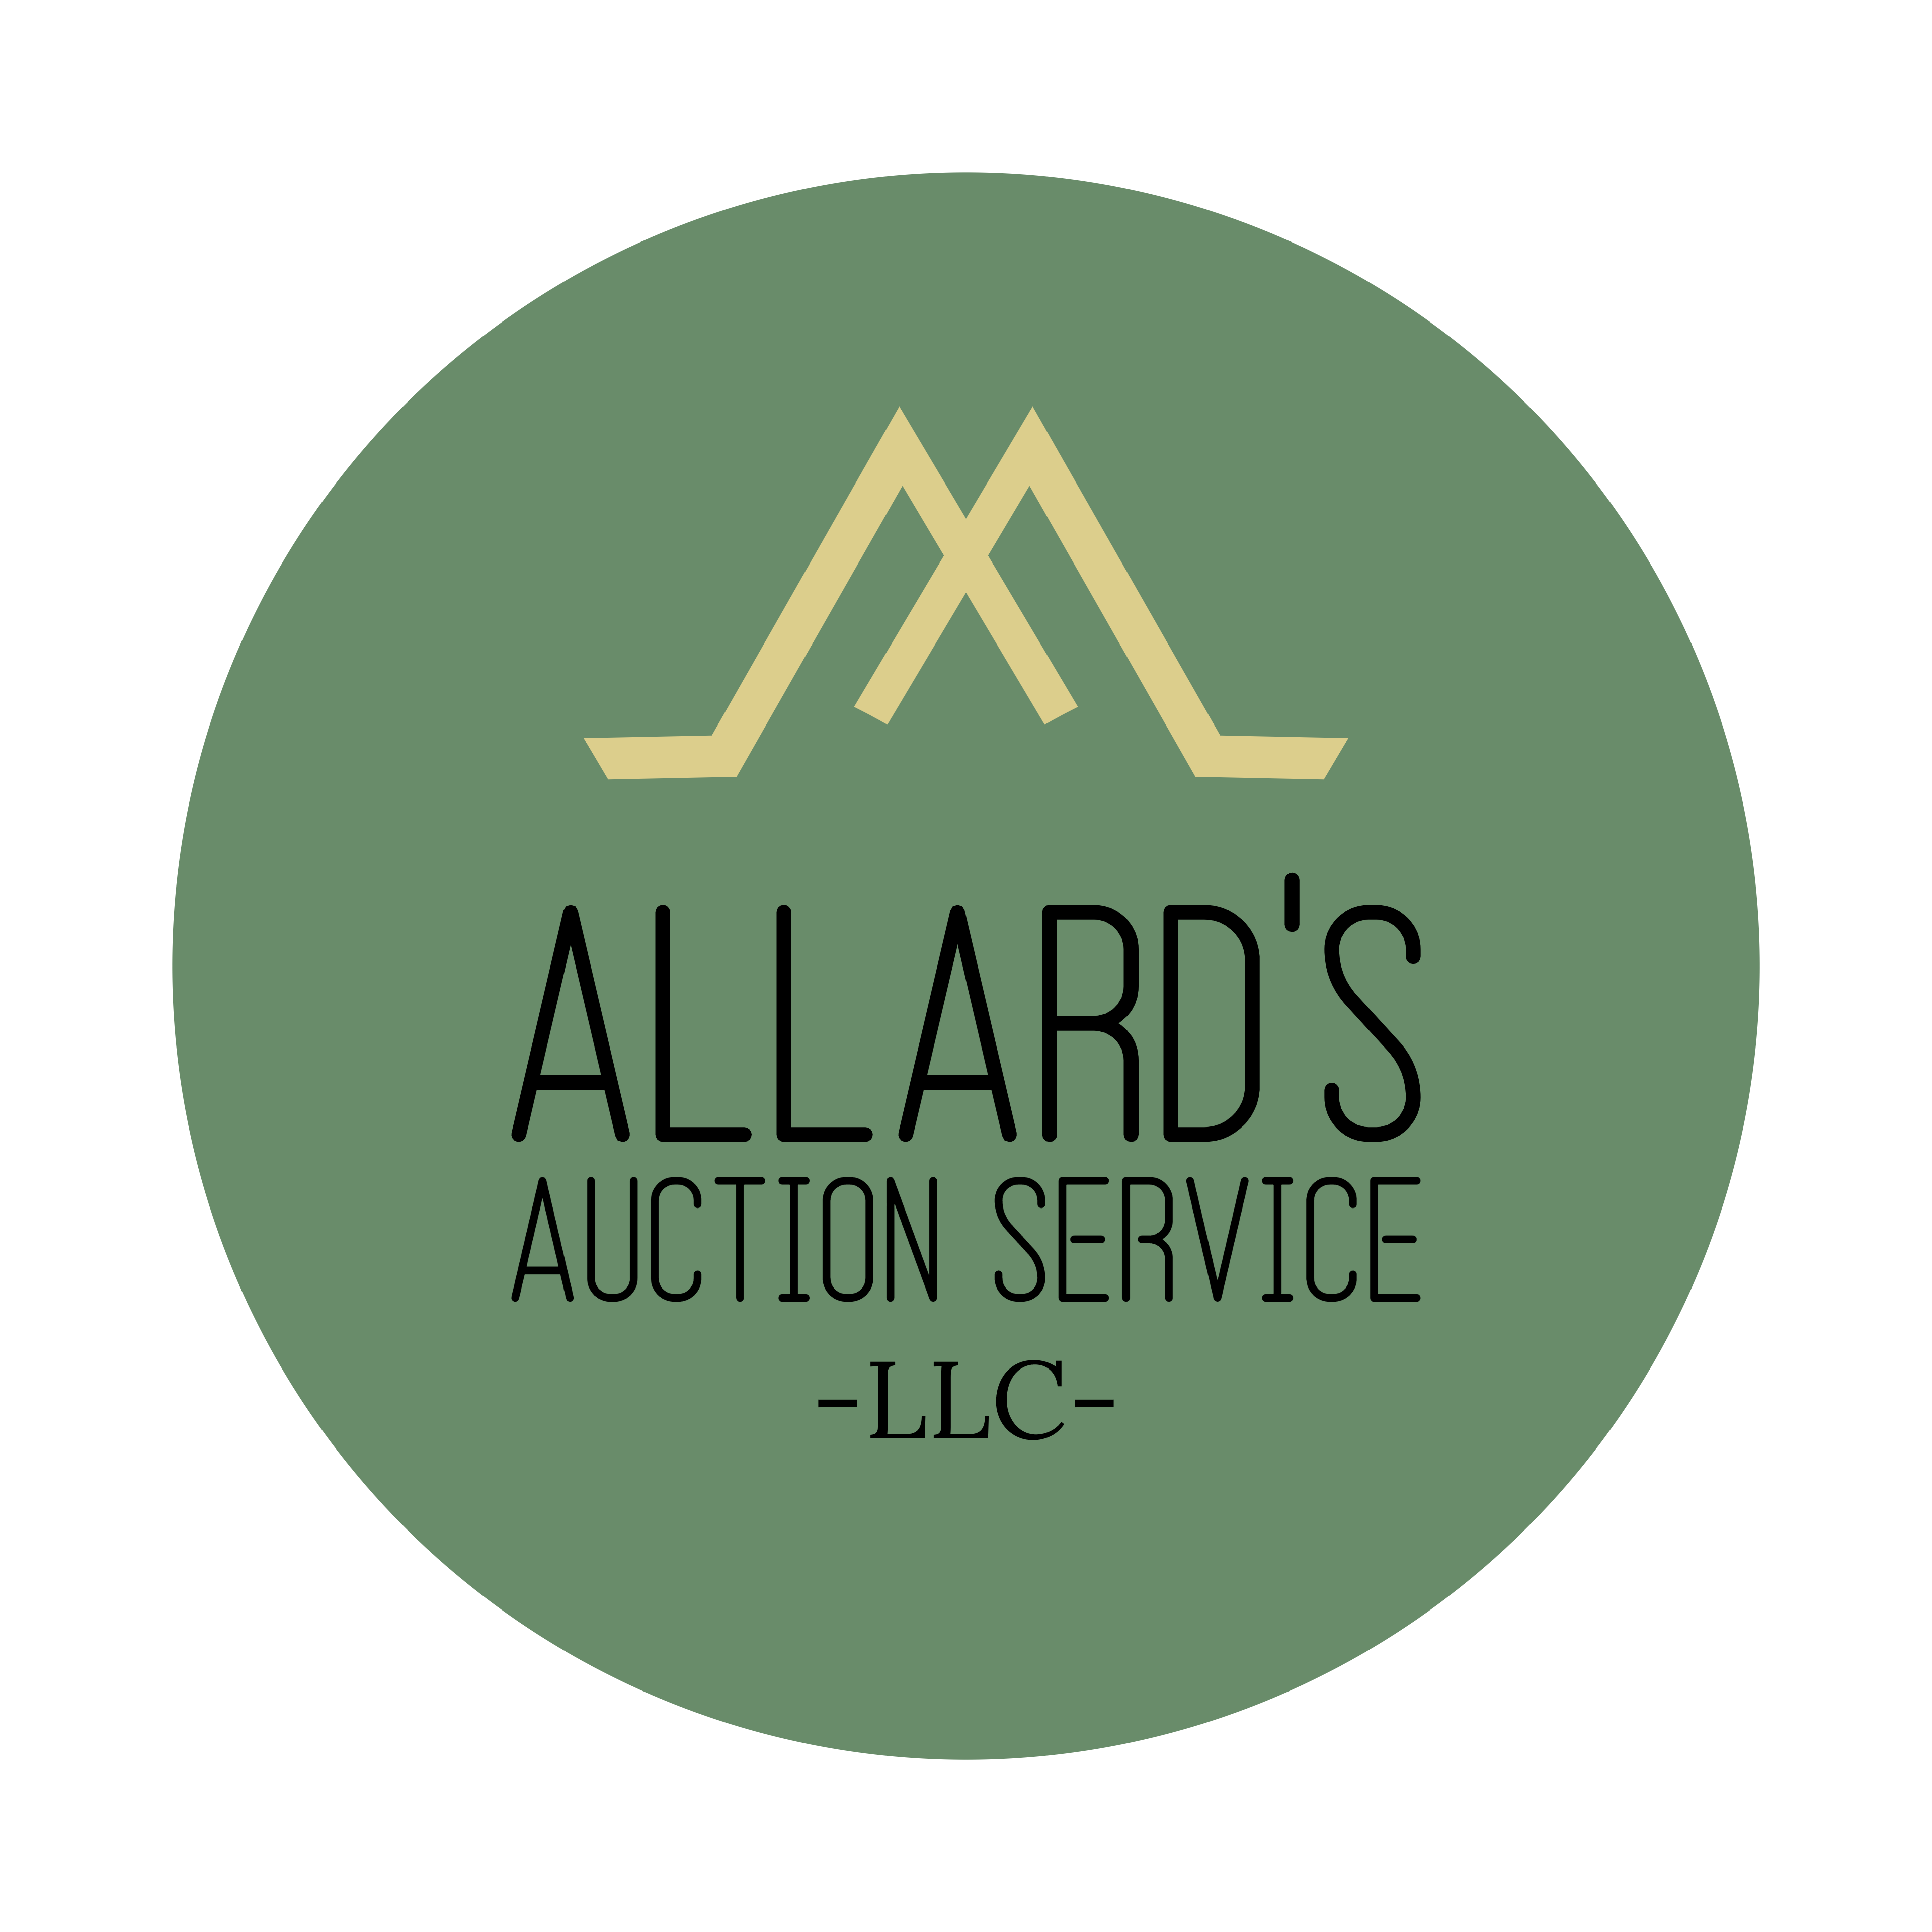 Allard's Auction Service